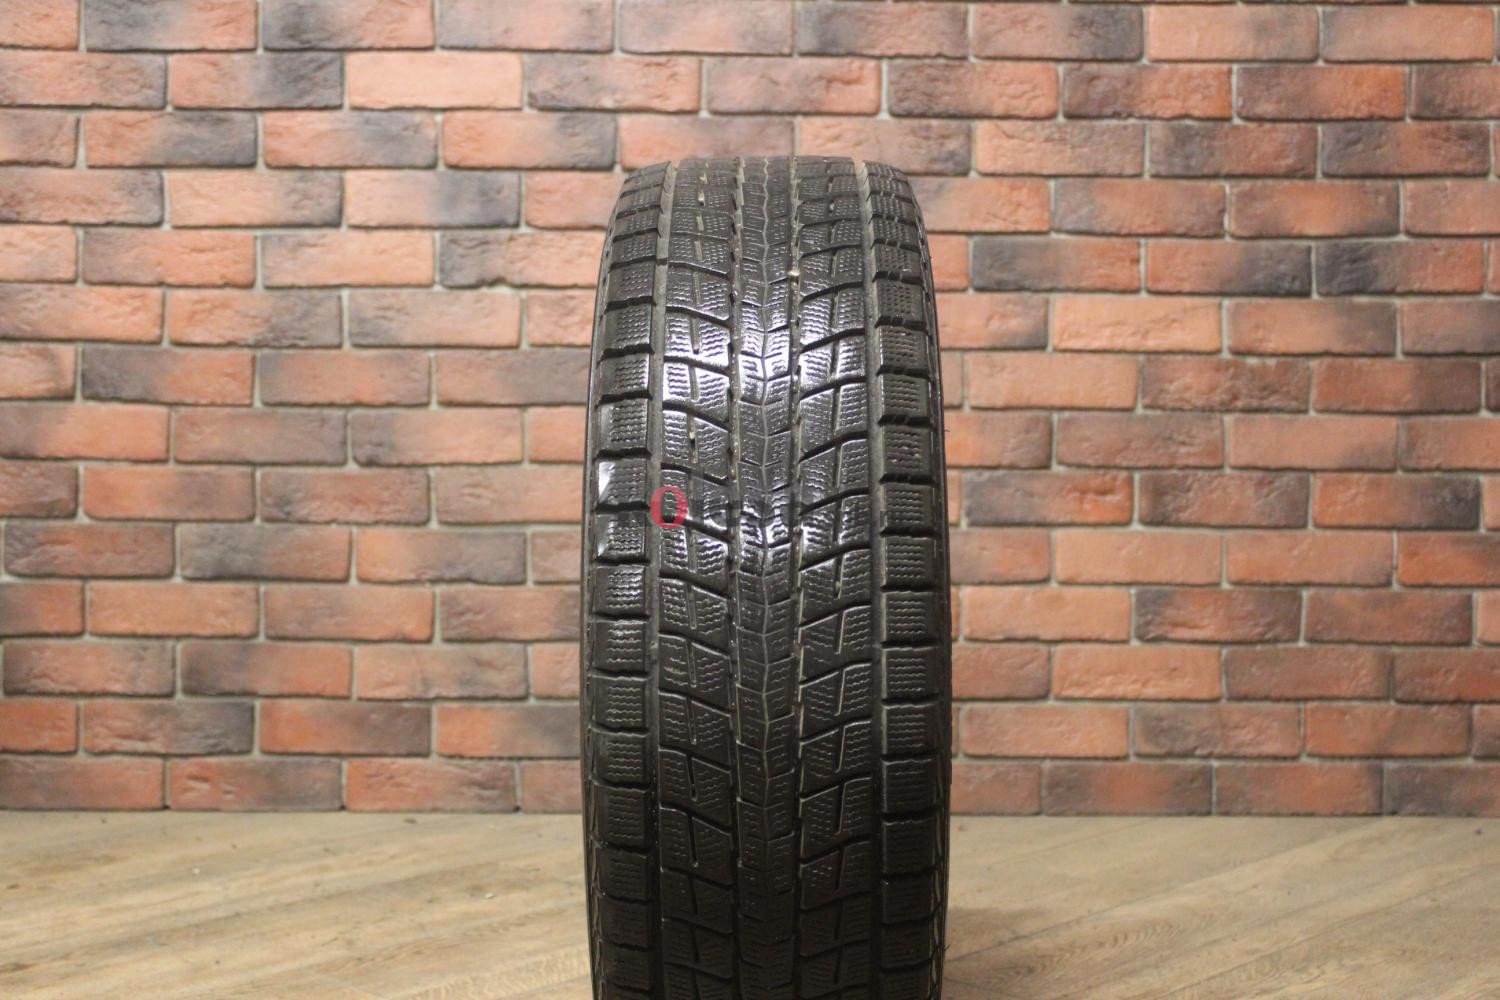 Зимние нешипованные шины R17 225/60 Dunlop Winter Maxx s j 8 бу Лип. (8-9 мм.)